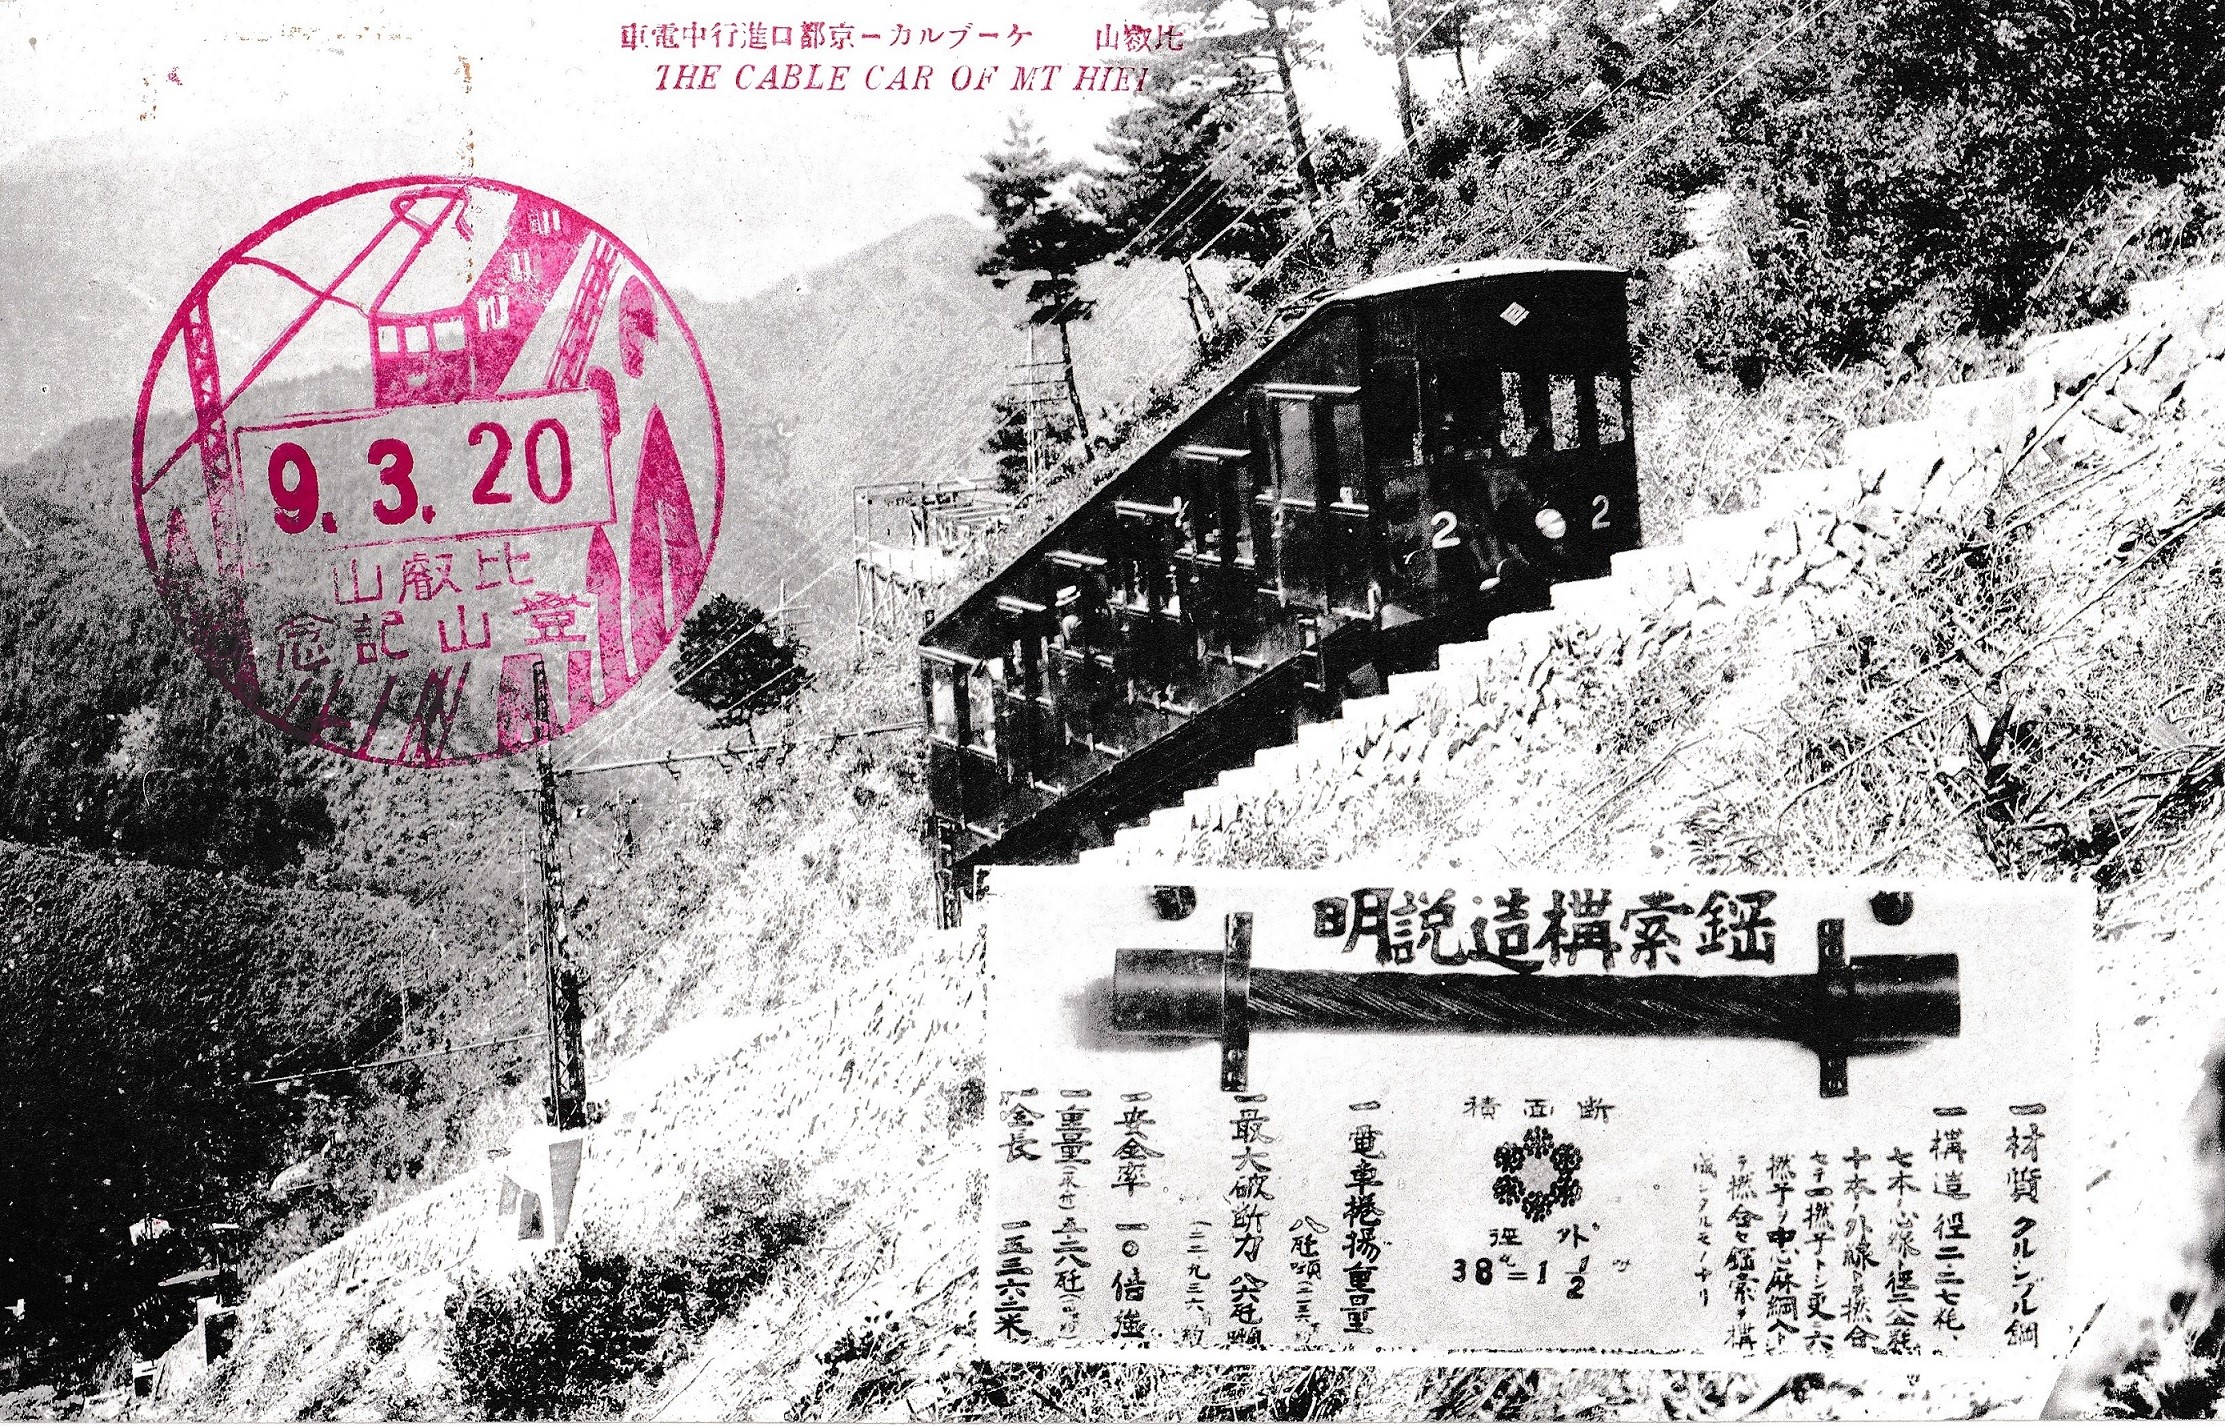 初代ケーブルカーが紹介されている絵葉書。どうやら昭和９年３月の乗車記念のようである。